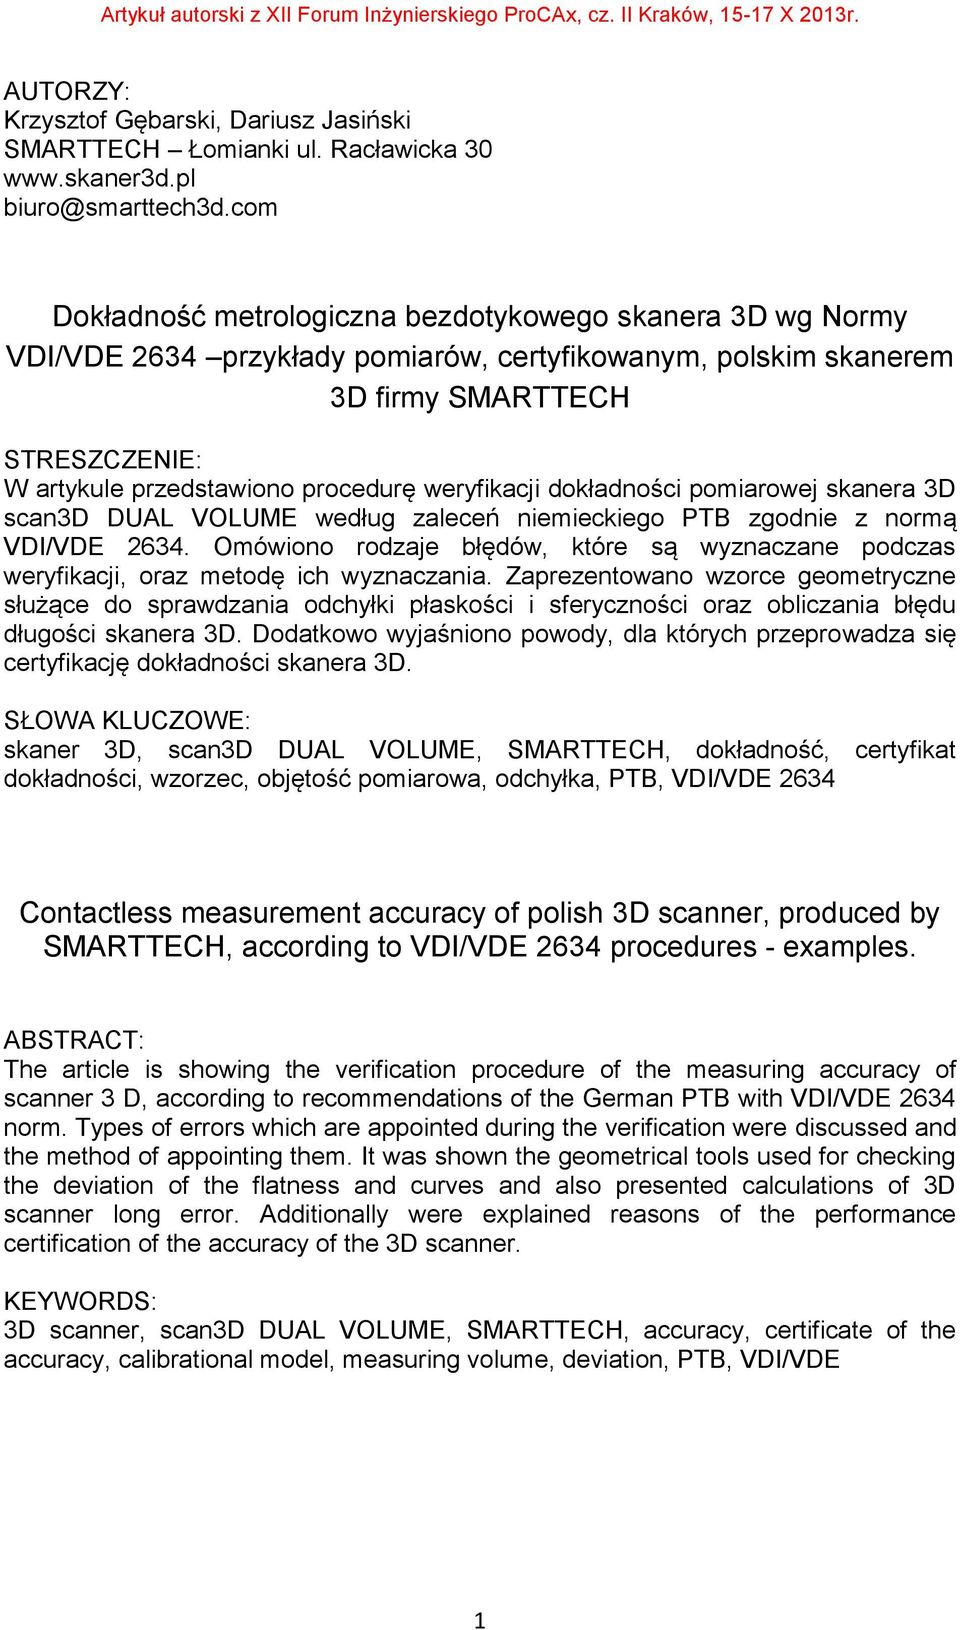 weryfikacji dokładności pomiarowej skanera 3D scan3d DUAL VOLUME według zaleceń niemieckiego PTB zgodnie z normą VDI/VDE 2634.